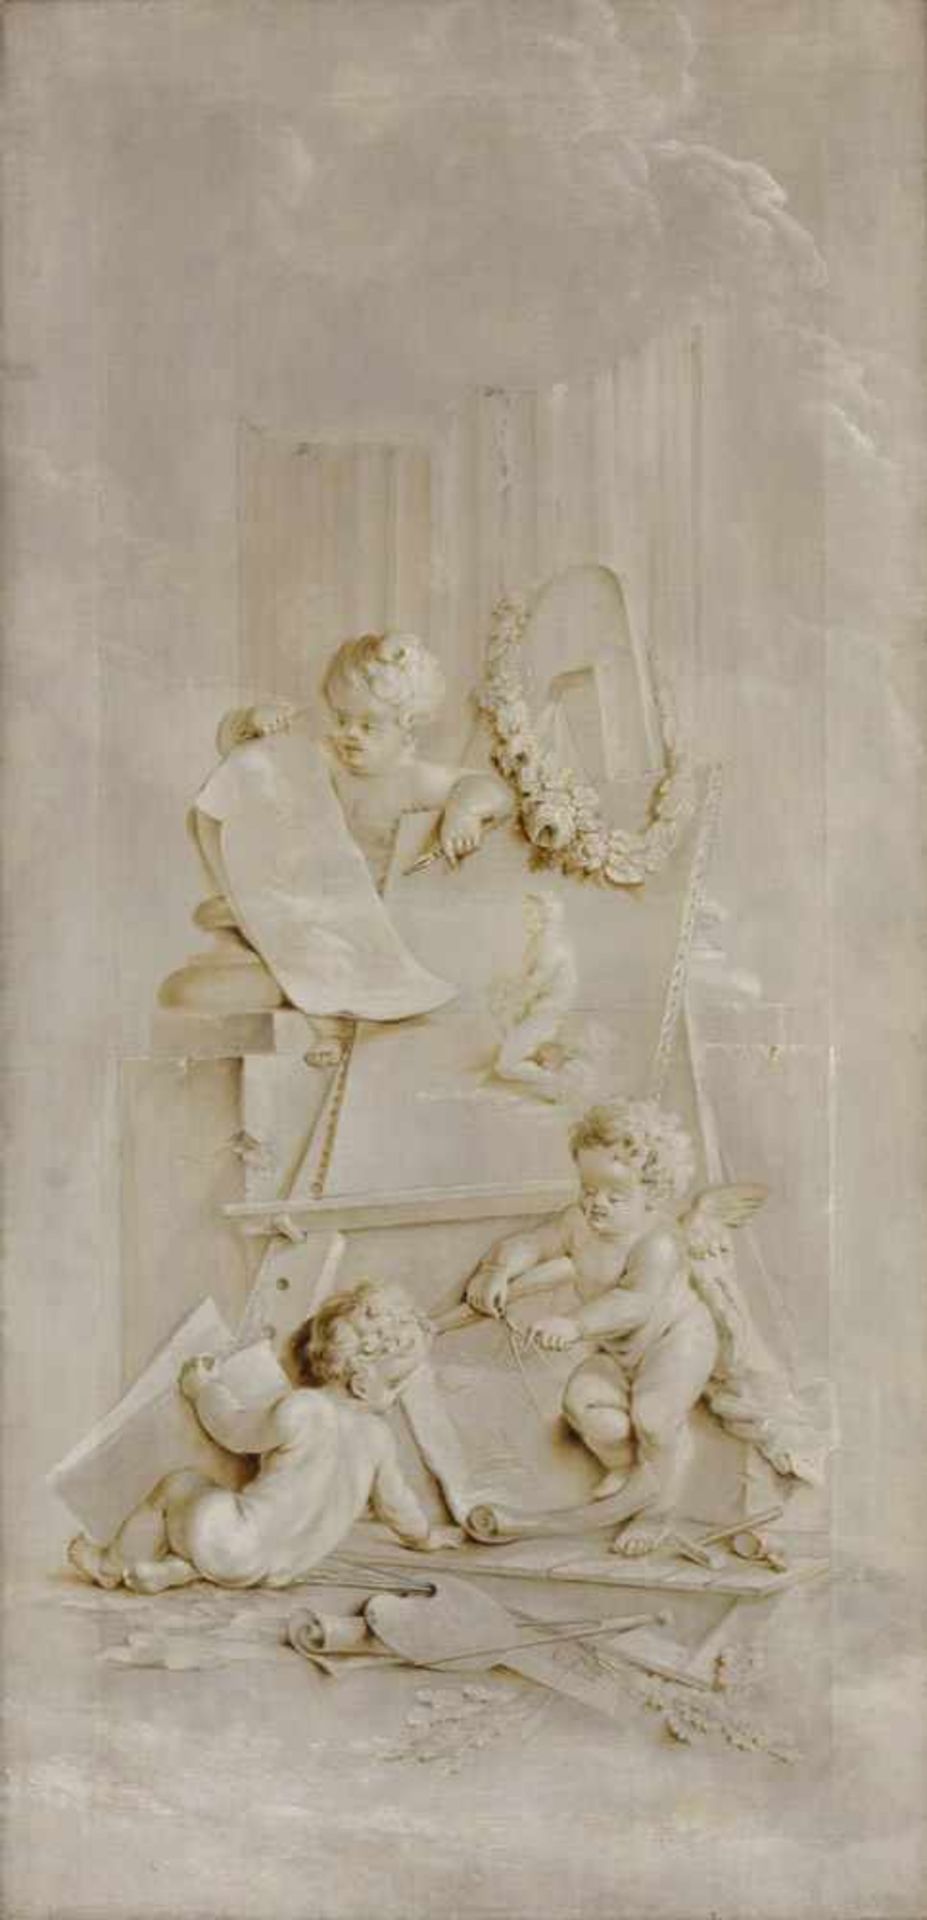 Niederländischer Meister 17./18. Jhdt.Allegorie der Künste.Öl en grisaille/Lwd., 204 x 98 cm.